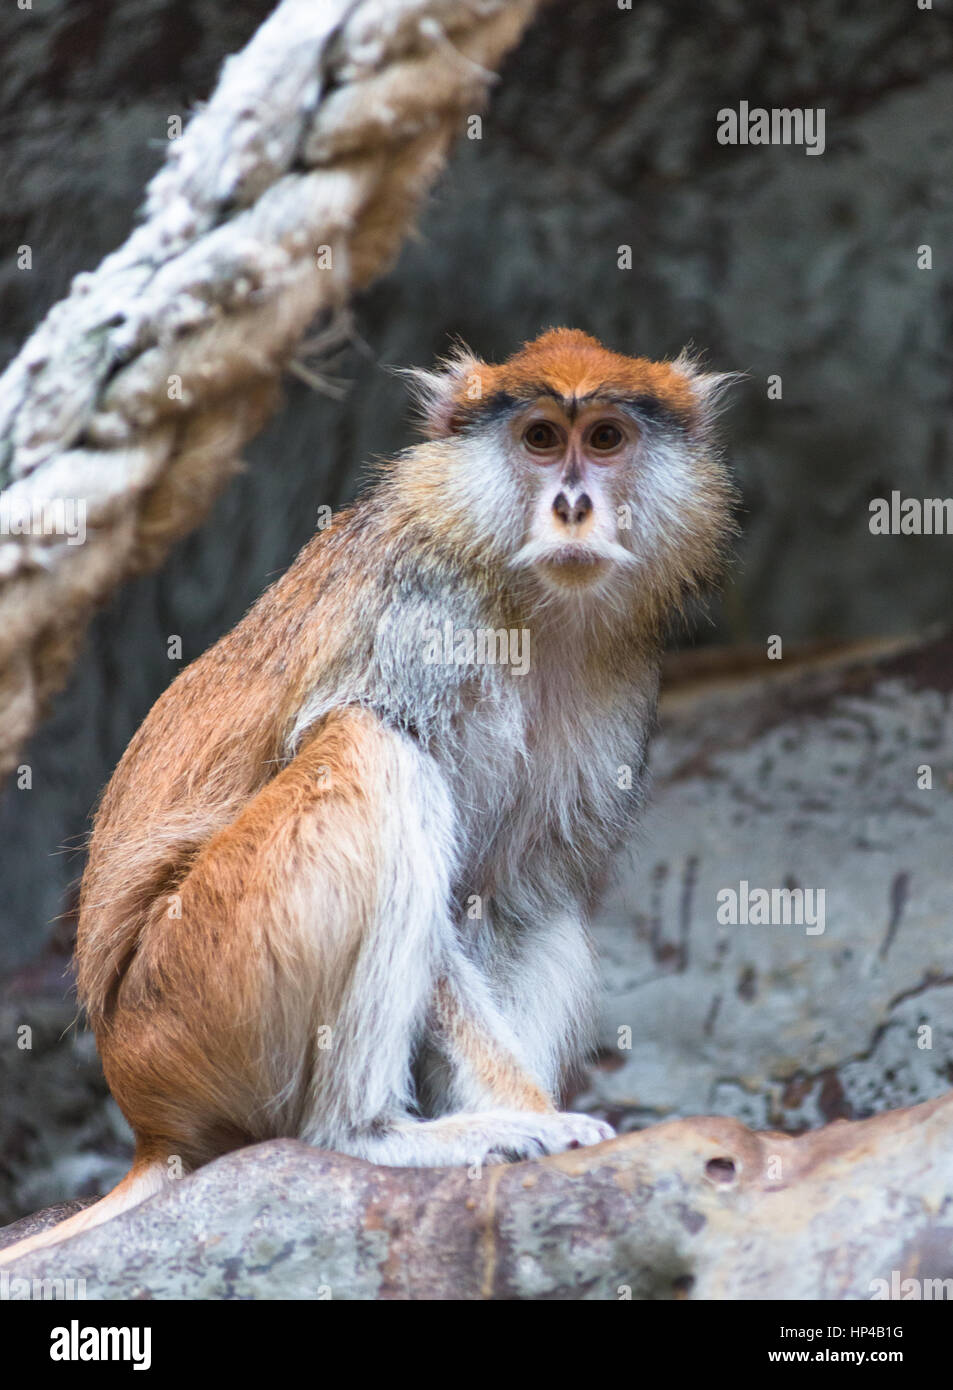 Die husarenaffe (Erythrocebus patas), wie die hussar Monkey bekannt. Der Zoo von Barcelona. Spanien. Stockfoto